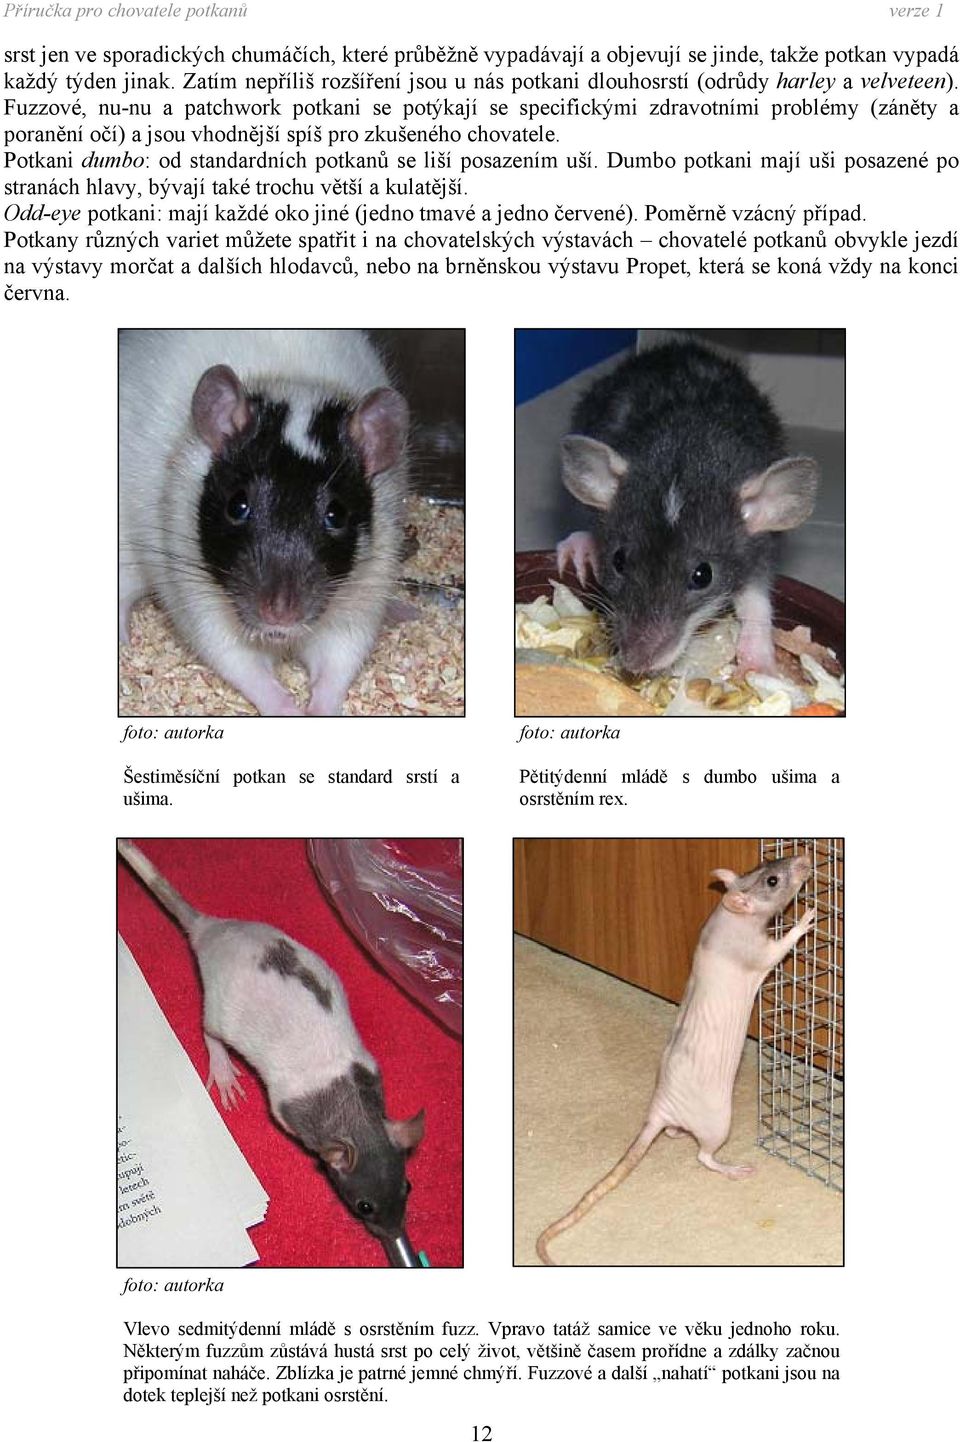 Fuzzové, nu-nu a patchwork potkani se potýkají se specifickými zdravotními problémy (záněty a poranění očí) a jsou vhodnější spíš pro zkušeného chovatele.